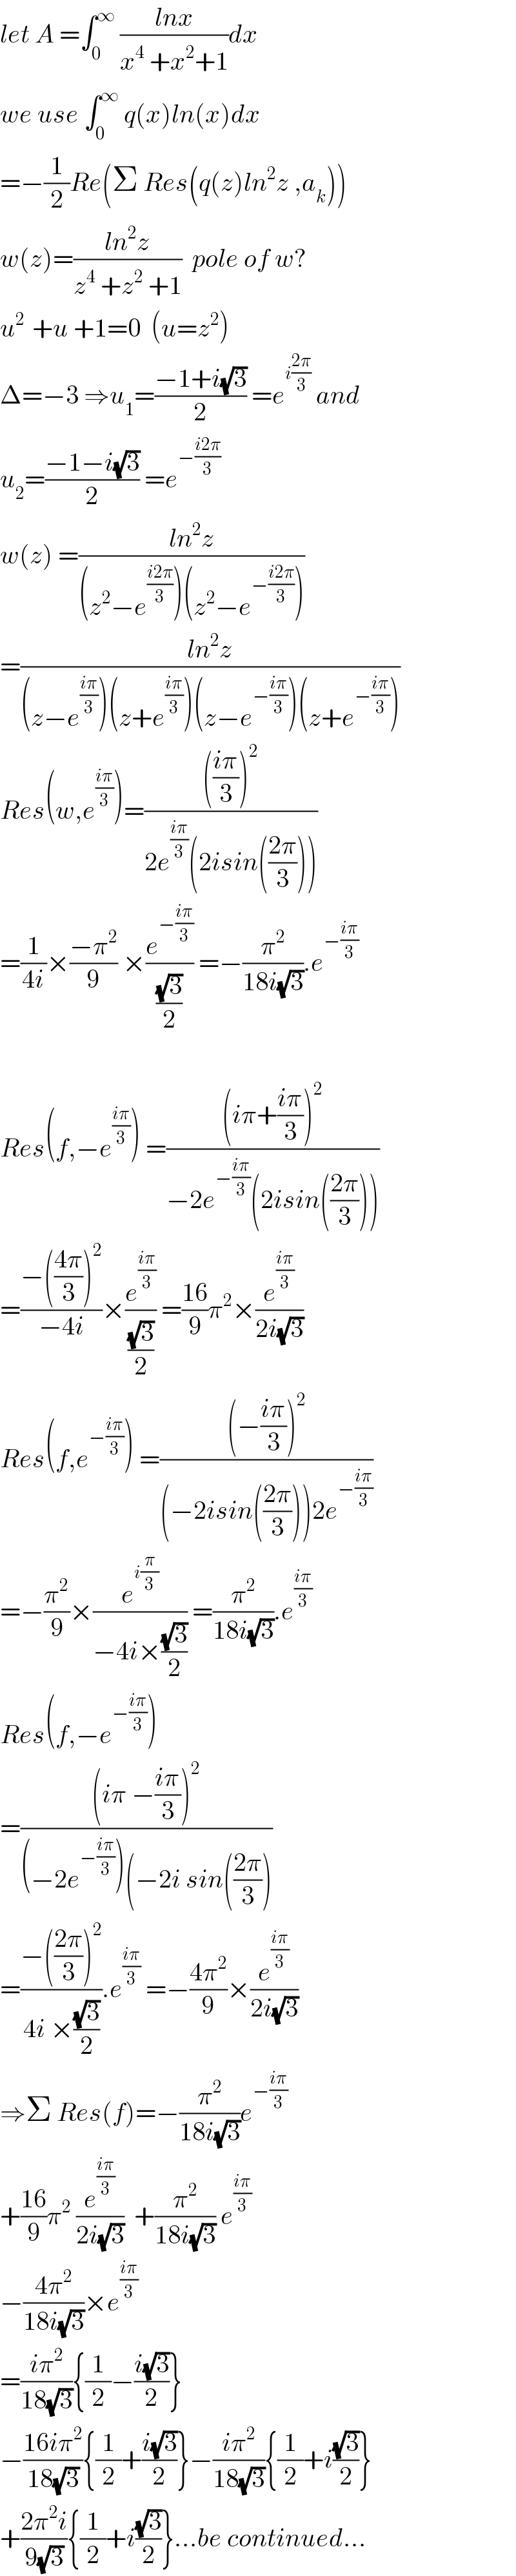 let A =∫_0 ^∞  ((lnx)/(x^4  +x^2 +1))dx  we use ∫_0 ^∞  q(x)ln(x)dx  =−(1/2)Re(Σ Res(q(z)ln^2 z ,a_k ))  w(z)=((ln^2 z)/(z^4  +z^2  +1))  pole of w?  u^(2 )  +u +1=0  (u=z^2 )  Δ=−3 ⇒u_1 =((−1+i(√3))/2) =e^(i((2π)/3))  and  u_2 =((−1−i(√3))/2) =e^(−((i2π)/3))   w(z) =((ln^2 z)/((z^2 −e^((i2π)/3) )(z^2 −e^(−((i2π)/3)) )))  =((ln^2 z)/((z−e^((iπ)/3) )(z+e^((iπ)/3) )(z−e^(−((iπ)/3)) )(z+e^(−((iπ)/3)) )))  Res(w,e^((iπ)/3) )=(((((iπ)/3))^2 )/(2e^((iπ)/3) (2isin(((2π)/3)))))  =(1/(4i))×((−π^2 )/9) ×(e^(−((iπ)/3)) /((√3)/2)) =−(π^2 /(18i(√3))).e^(−((iπ)/3))     Res(f,−e^((iπ)/3) ) =(((iπ+((iπ)/3))^2 )/(−2e^(−((iπ)/3)) (2isin(((2π)/3)))))  =((−(((4π)/3))^2 )/(−4i))×(e^((iπ)/3) /((√3)/2)) =((16)/9)π^2 ×(e^((iπ)/3) /(2i(√3)))  Res(f,e^(−((iπ)/3)) ) =(((−((iπ)/3))^2 )/((−2isin(((2π)/3)))2e^(−((iπ)/3)) ))  =−(π^2 /9)×(e^(i(π/3)) /(−4i×((√3)/2))) =(π^2 /(18i(√3))).e^((iπ)/3)   Res(f,−e^(−((iπ)/3)) )  =(((iπ −((iπ)/3))^2 )/((−2e^(−((iπ)/3)) )(−2i sin(((2π)/3))))  =((−(((2π)/3))^2 )/(4i ×((√3)/2))).e^((iπ)/3)  =−((4π^2 )/9)×(e^((iπ)/3) /(2i(√3)))  ⇒Σ Res(f)=−(π^2 /(18i(√3)))e^(−((iπ)/3))   +((16)/9)π^2  (e^((iπ)/3) /(2i(√3)))  +(π^2 /(18i(√3))) e^((iπ)/3)   −((4π^2 )/(18i(√3)))×e^((iπ)/3)   =((iπ^2 )/(18(√3))){(1/2)−((i(√3))/2)}  −((16iπ^2 )/(18(√3))){(1/2)+((i(√3))/2)}−((iπ^2 )/(18(√3))){(1/2)+i((√3)/2)}  +((2π^2 i)/(9(√3))){(1/2)+i((√3)/2)}...be continued...  